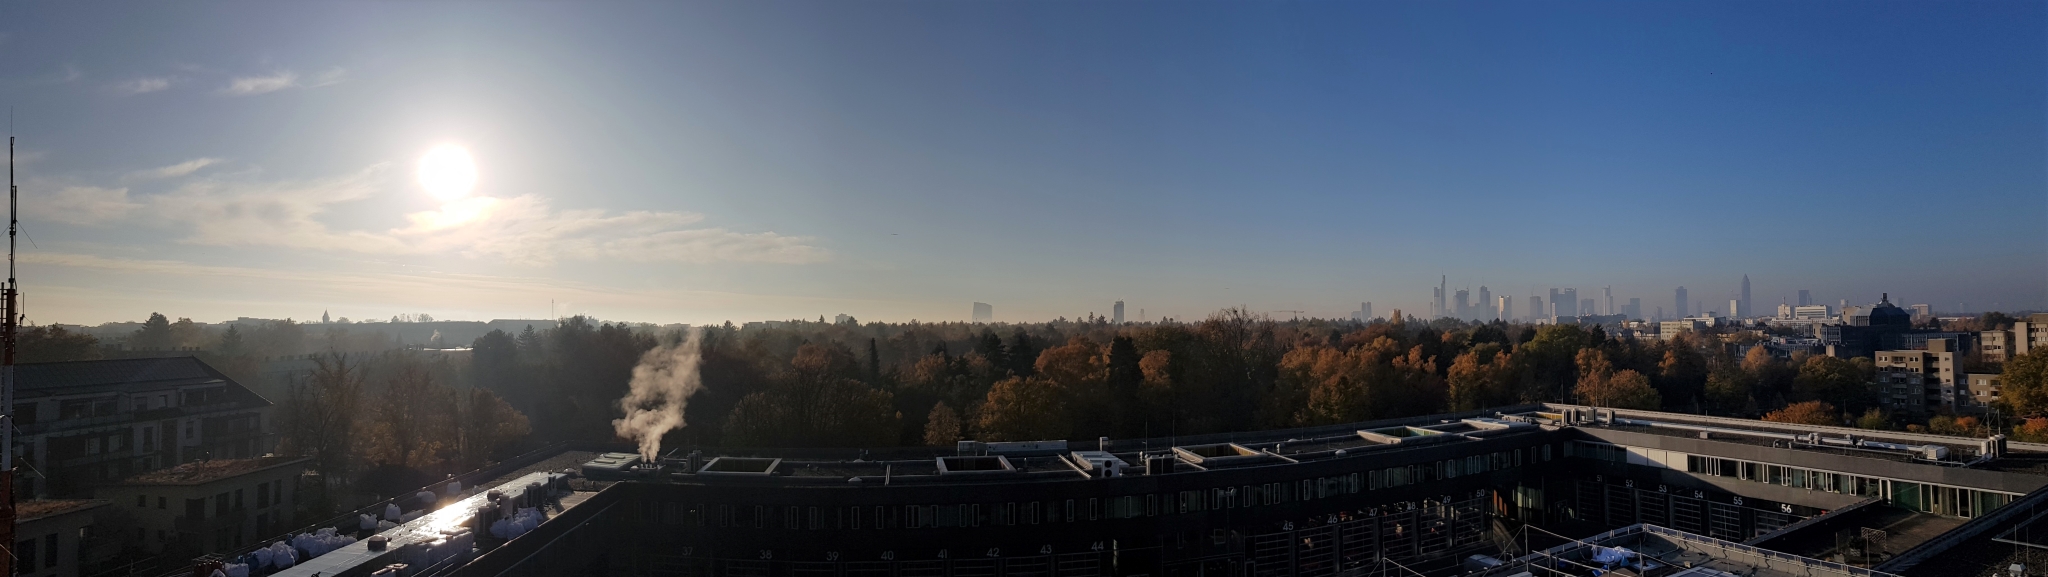 BKRZ mit Panorama Skyline von Frankfurt am Main | Foto © BKRZ GmbH & Co. KG